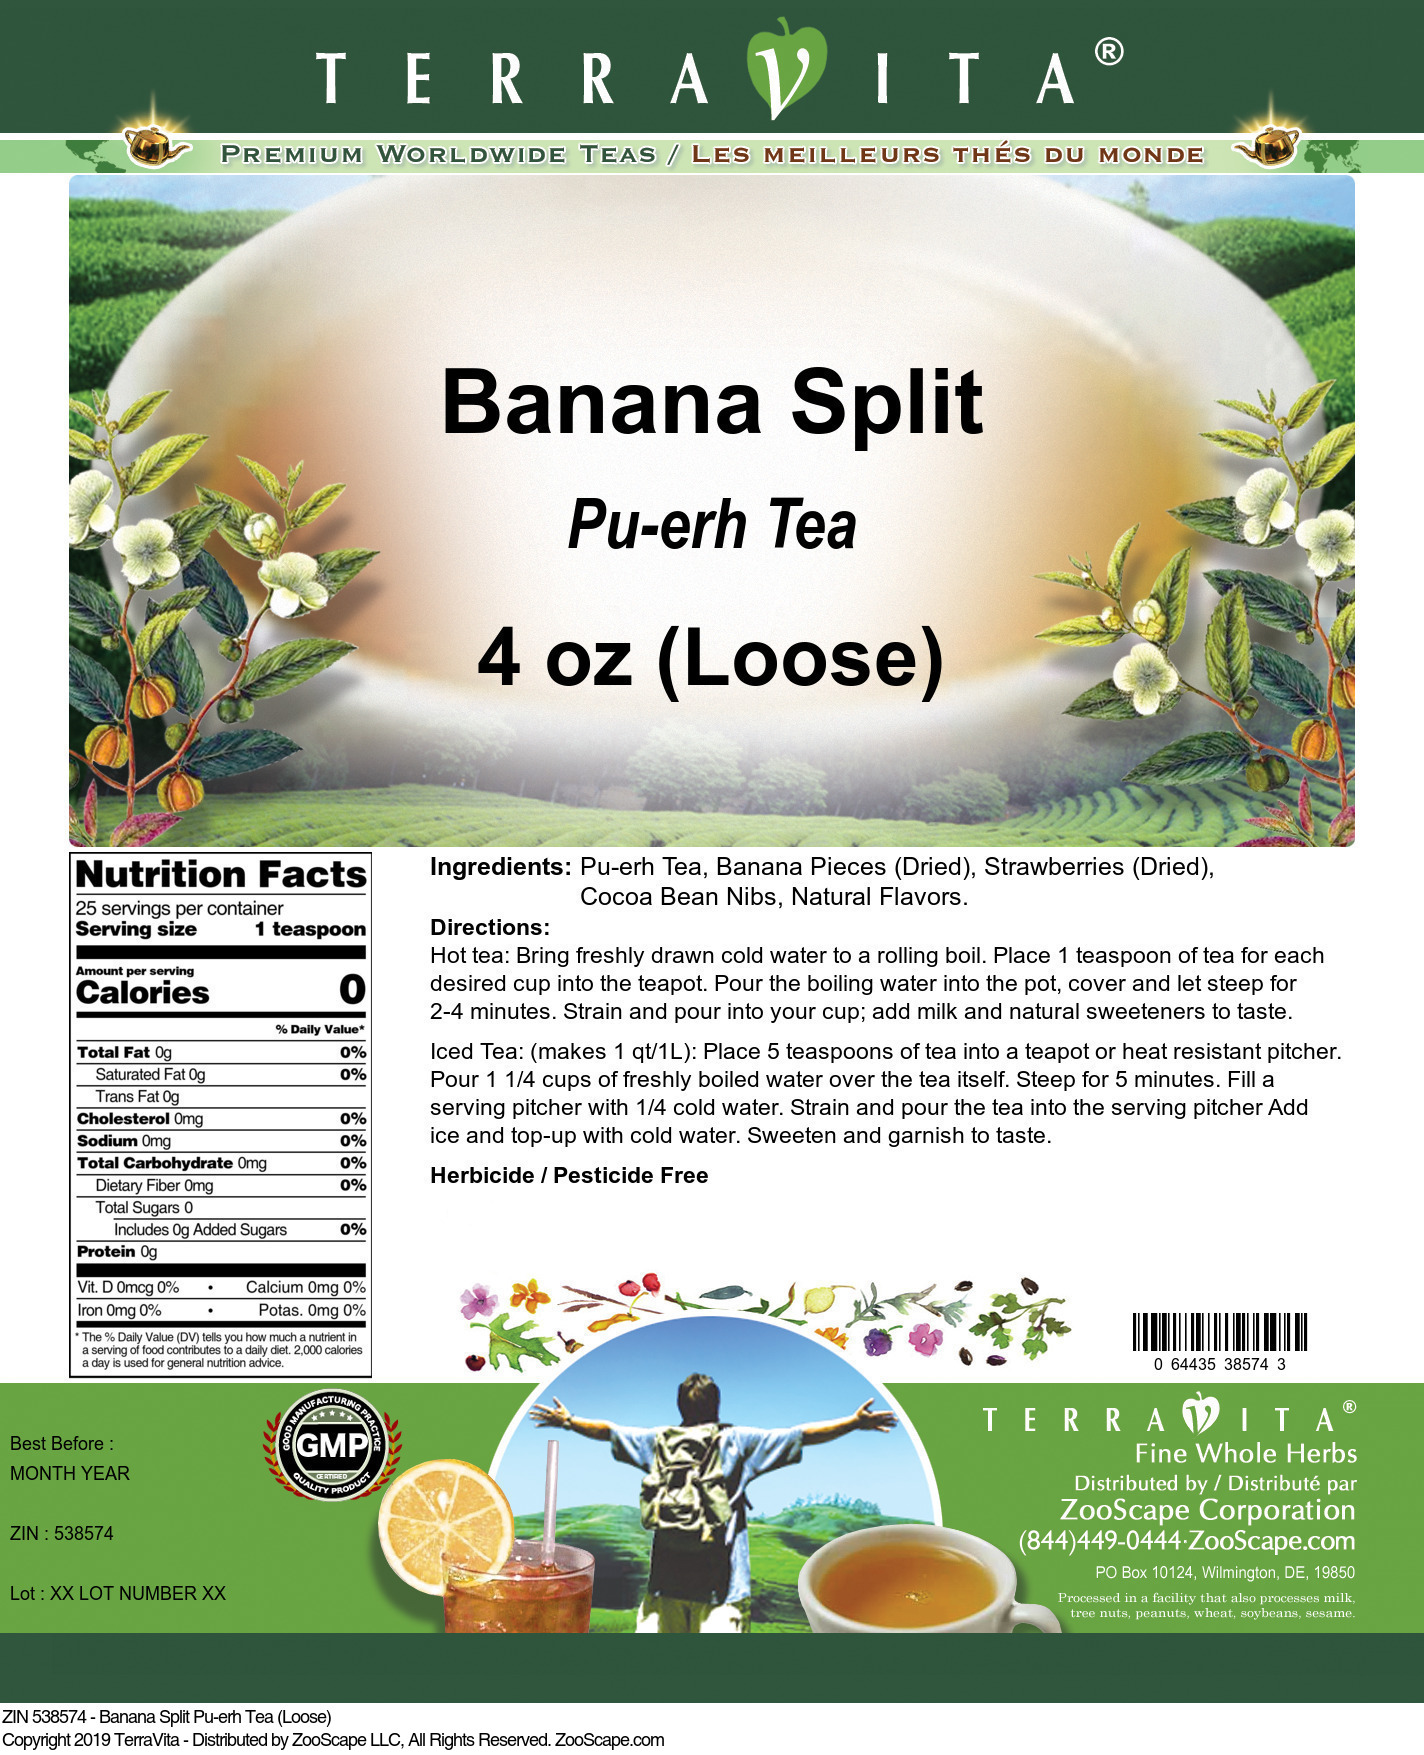 Banana Split Pu-erh Tea (Loose) - Label